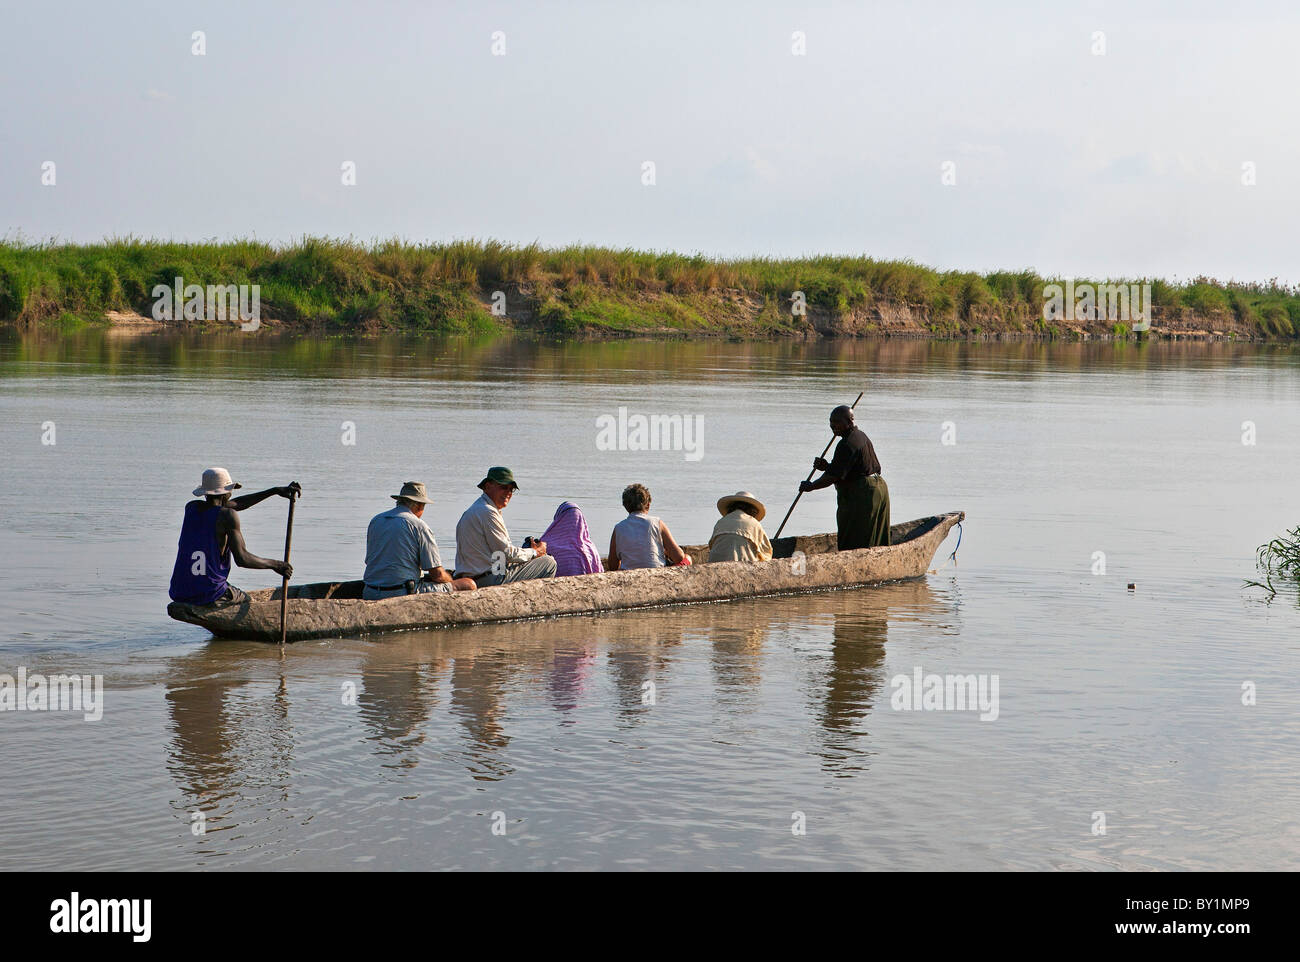 Bootfahren und Vogelbeobachtung auf dem Kilombero-Fluss in der Nähe von Ifakara. Dieser Fluss ist einer der größten Nebenflüsse des Rufiji Flusses. Stockfoto